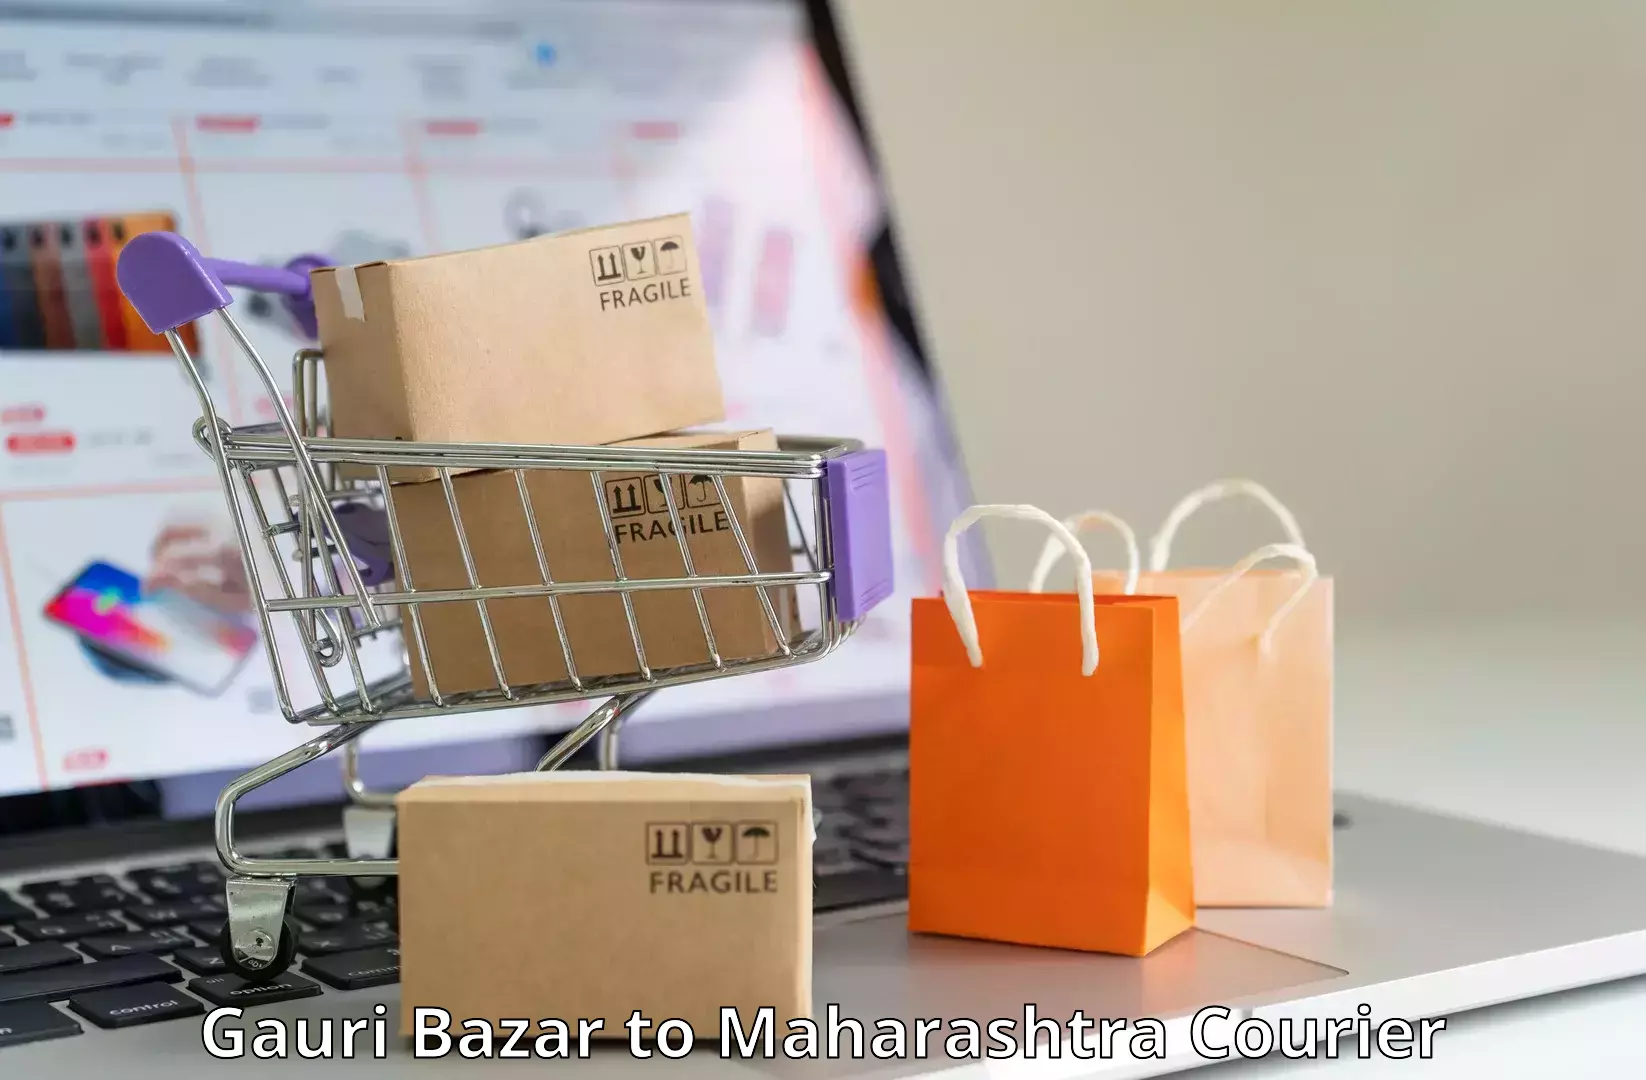 Customer-centric shipping Gauri Bazar to Jamkhed